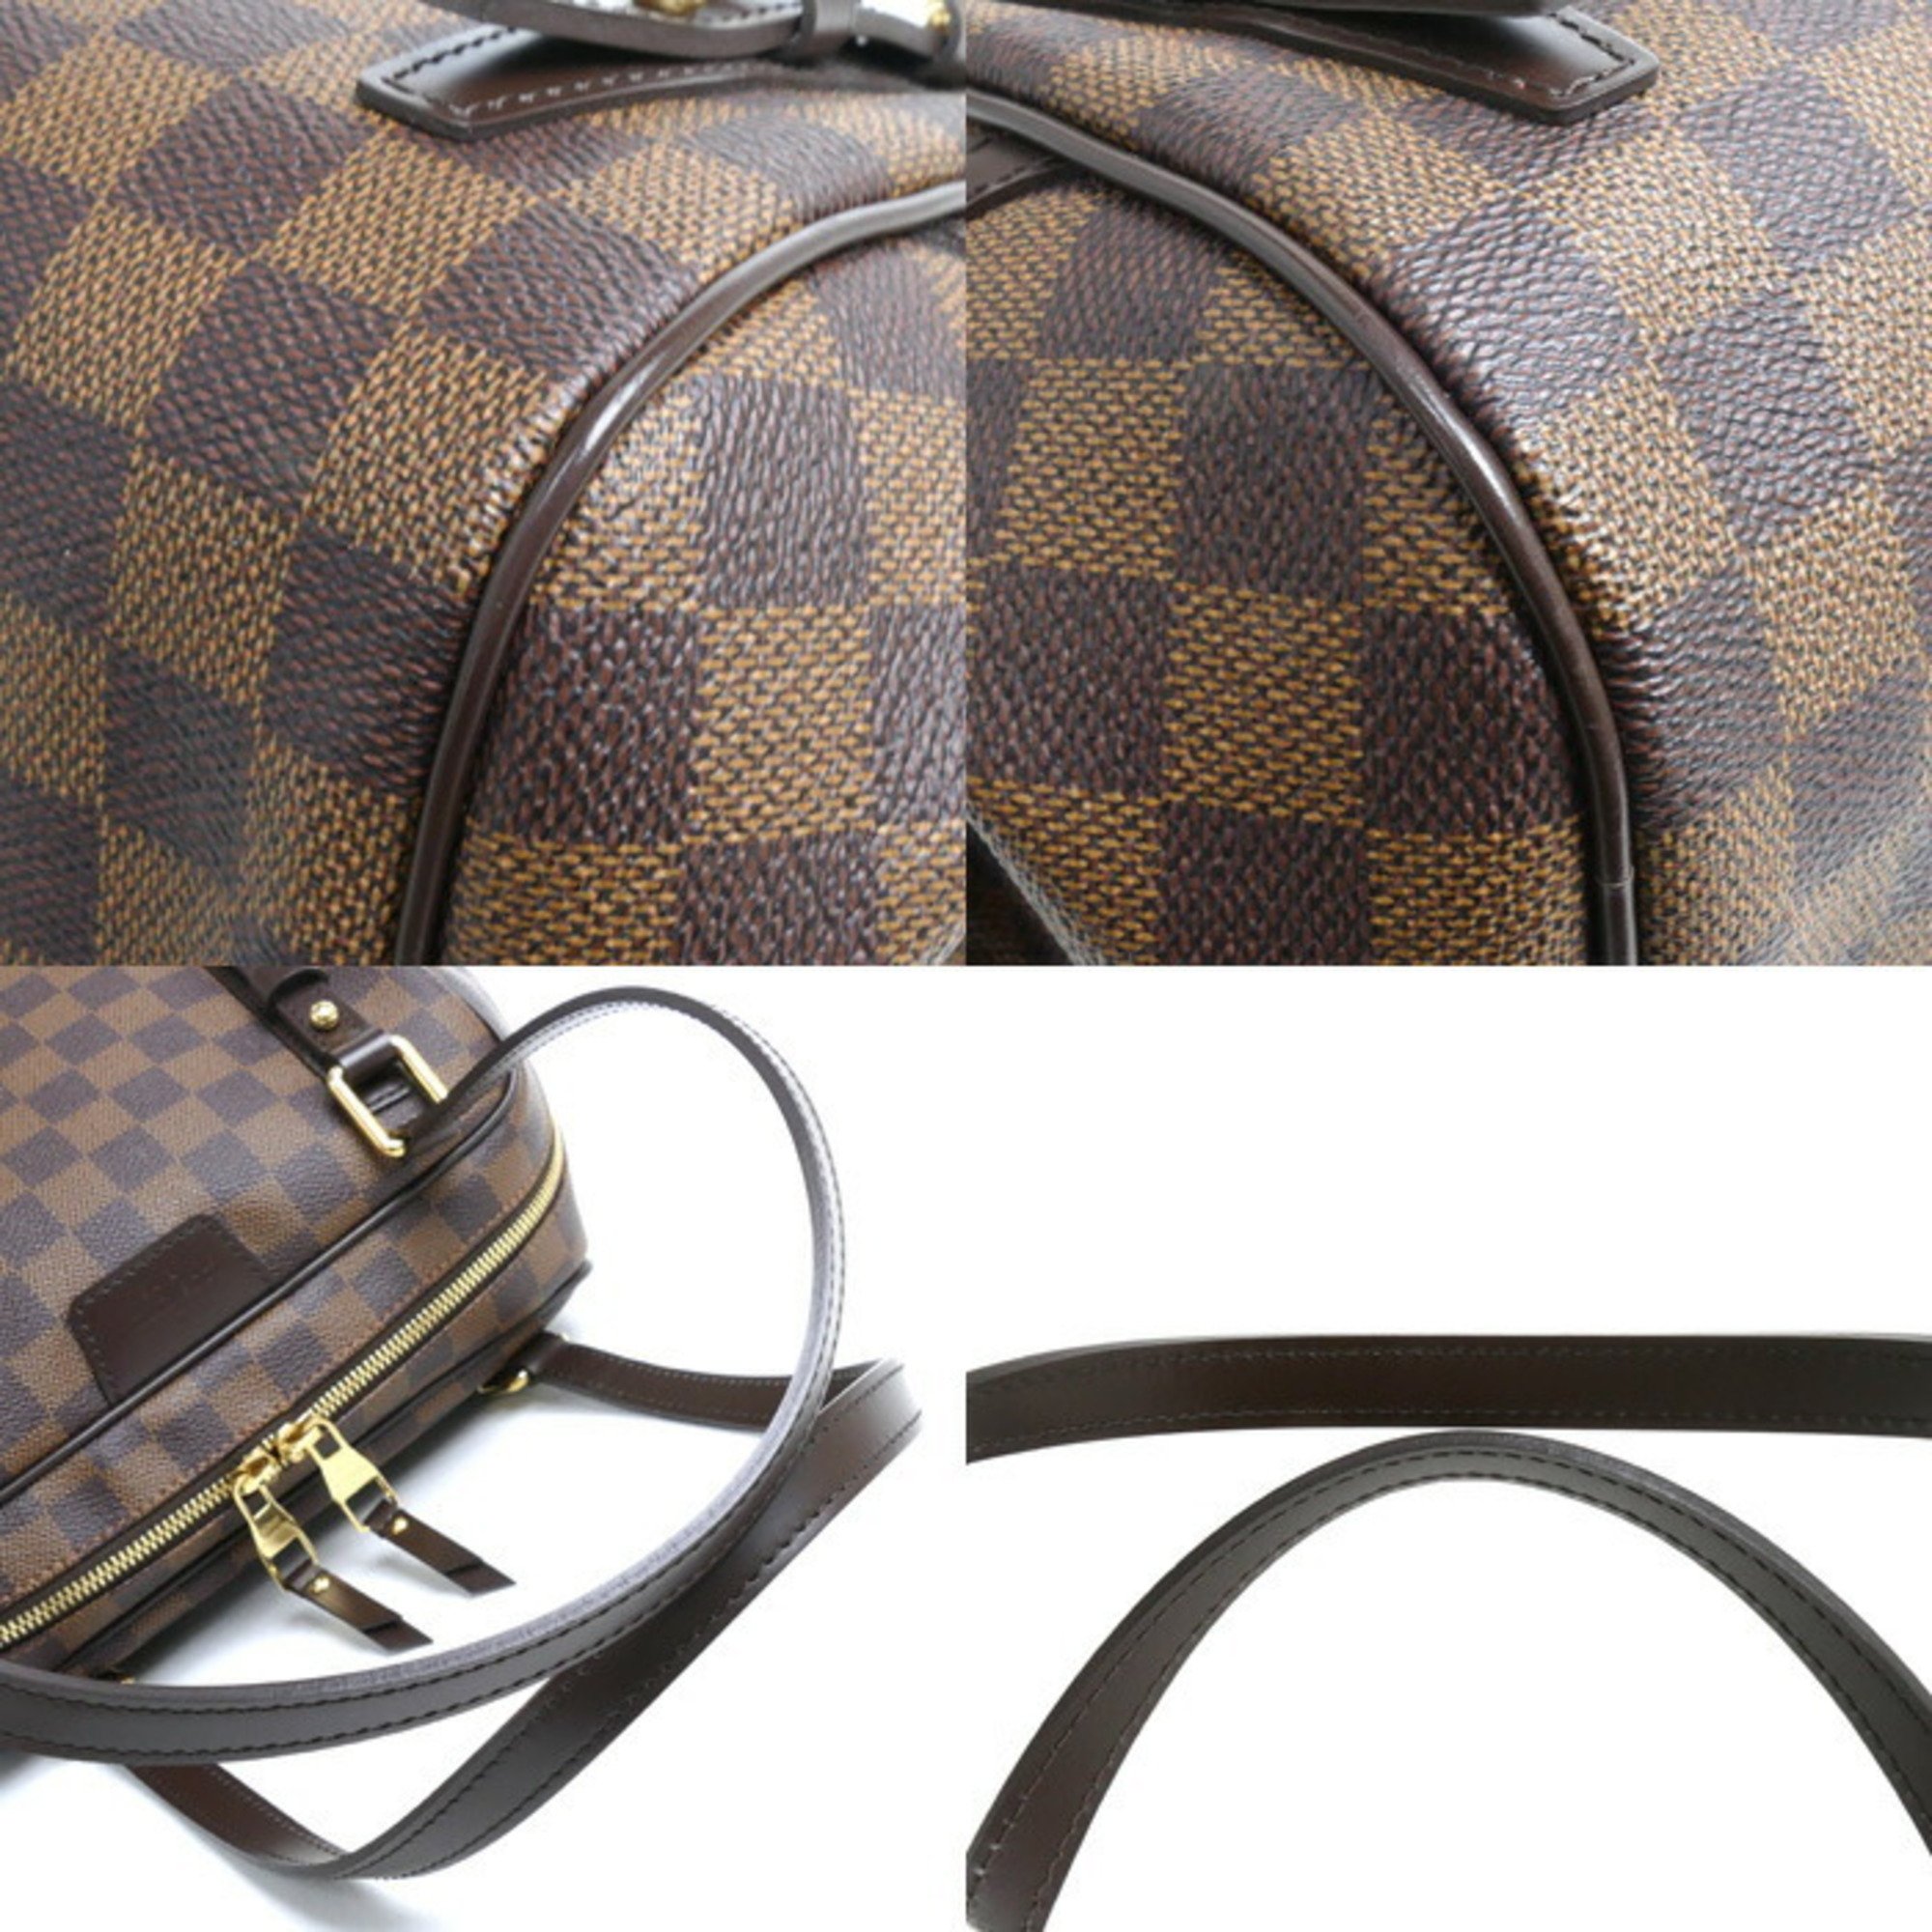 LOUIS VUITTON Louis Vuitton Rivington PM Shoulder Bag Damier N41157 Women's